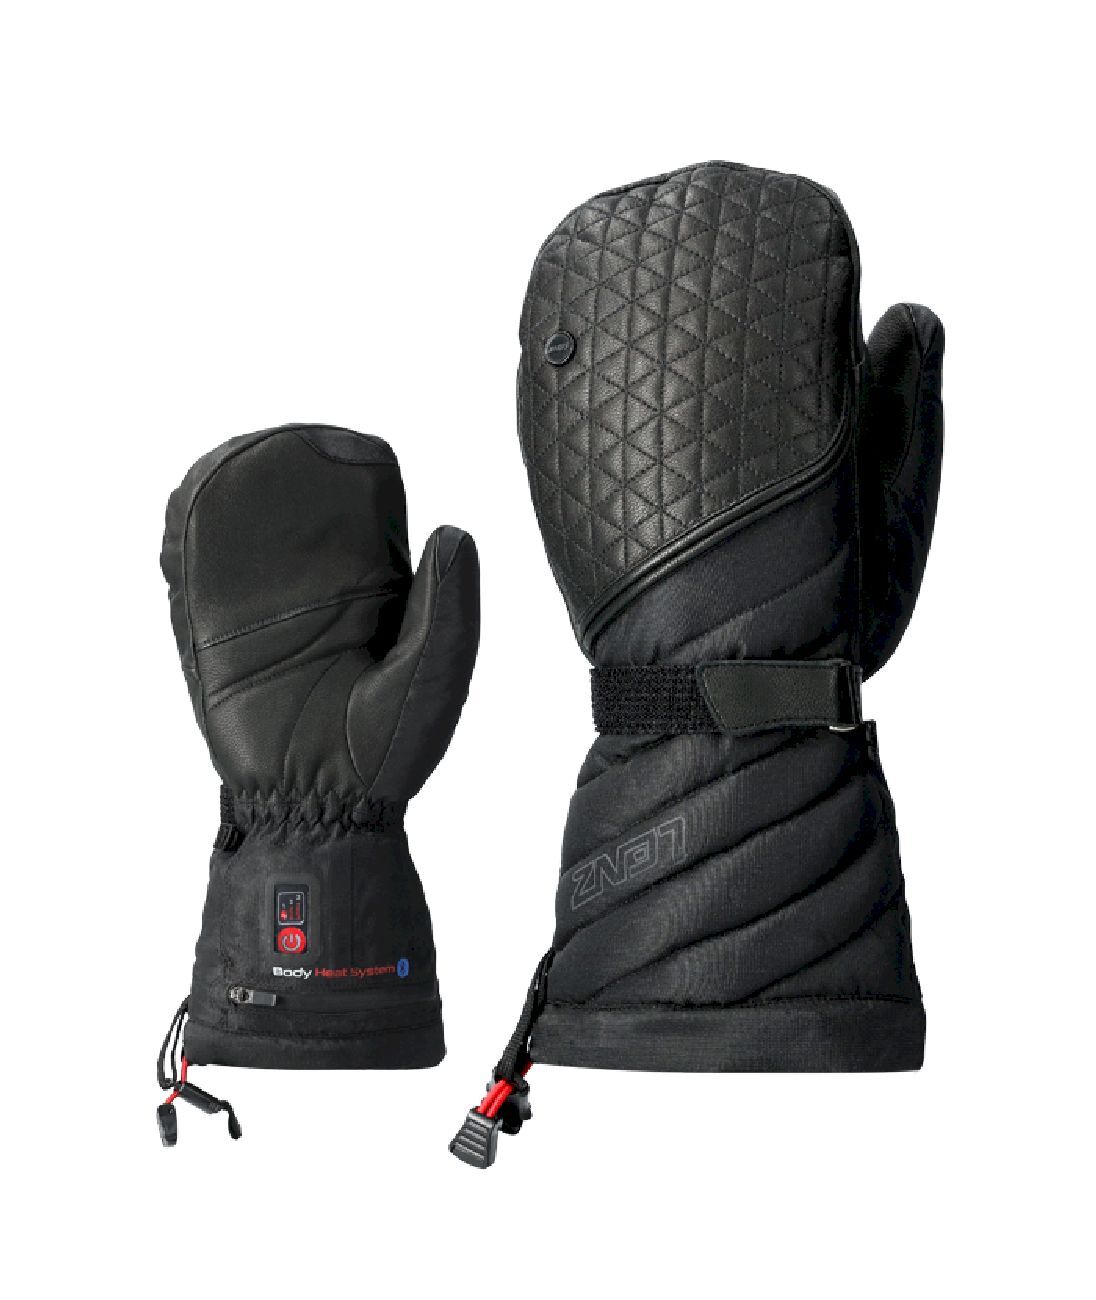 Lenz Heat Glove 6.0 Finger Cap Mittens - Handsker - Damer